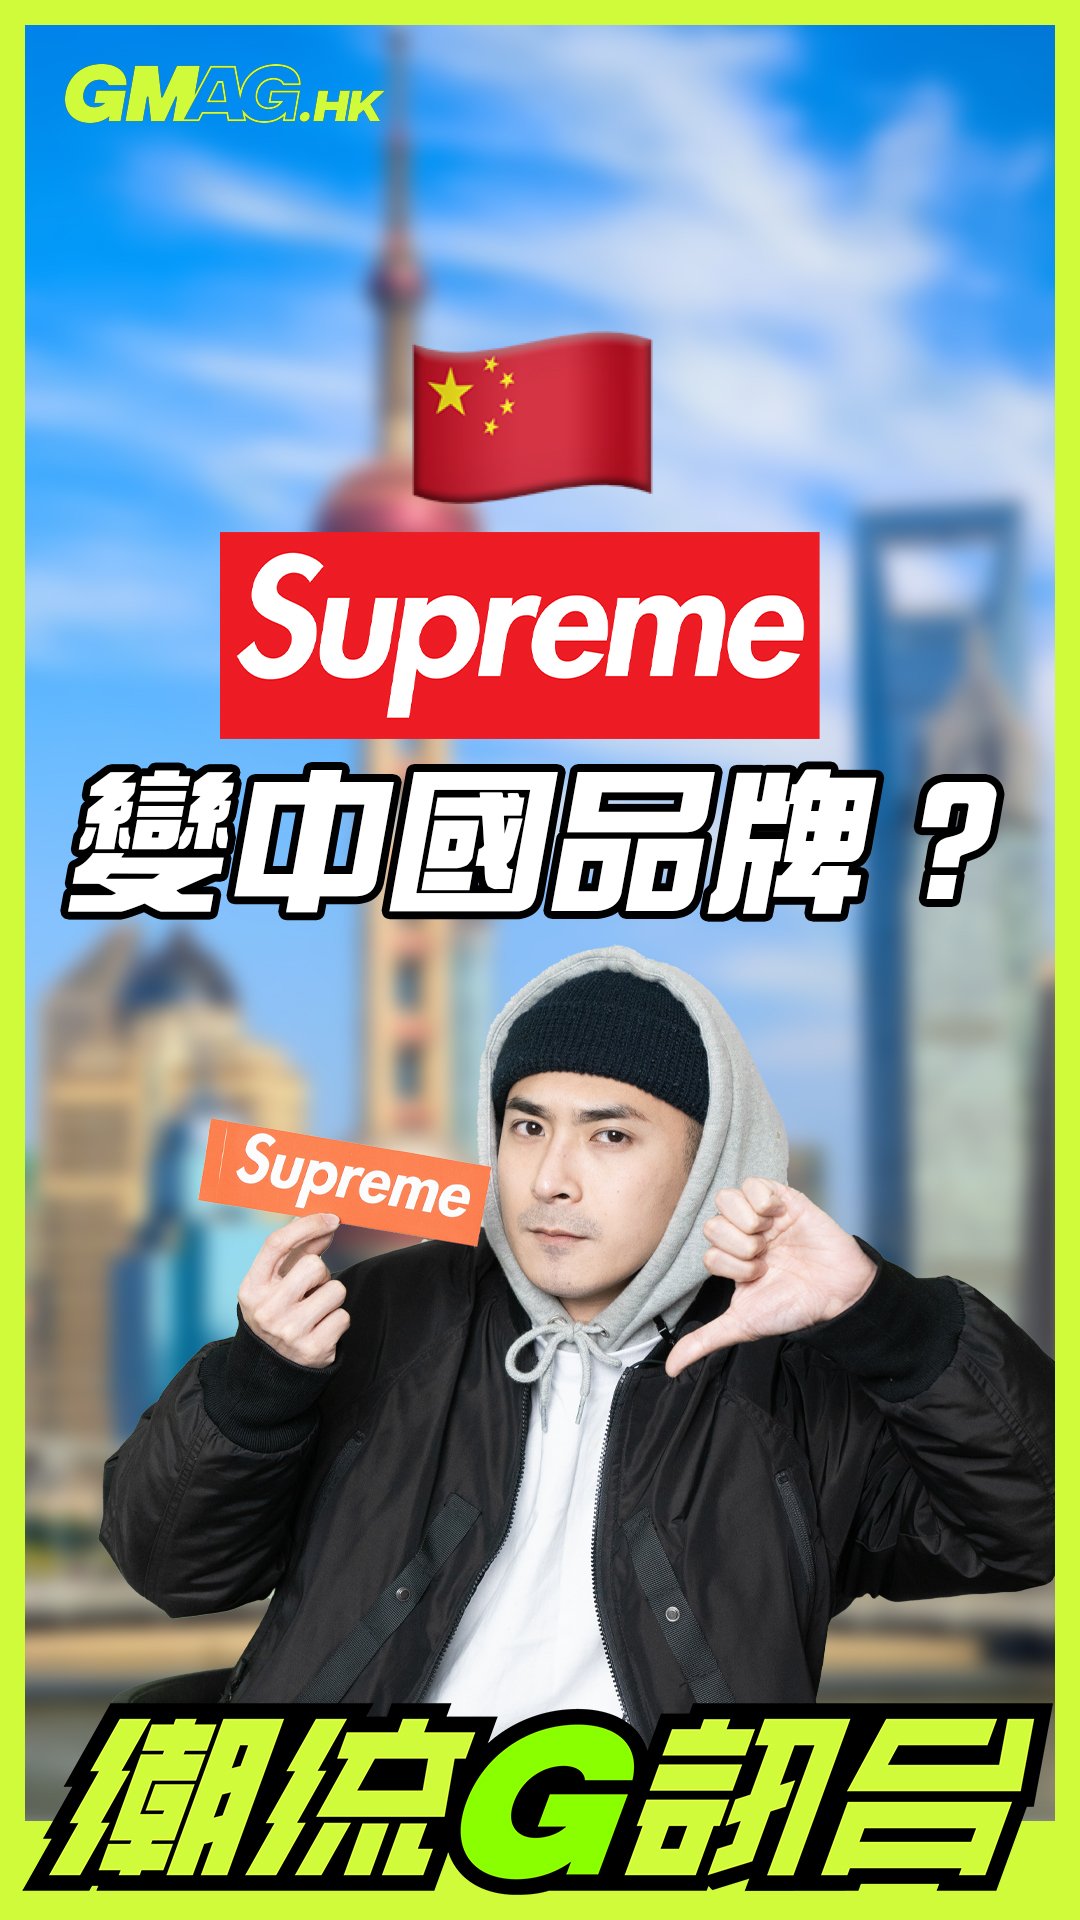 🔥《潮流G訊台》🔥 SUPREME 將會變中國品牌？🇨🇳